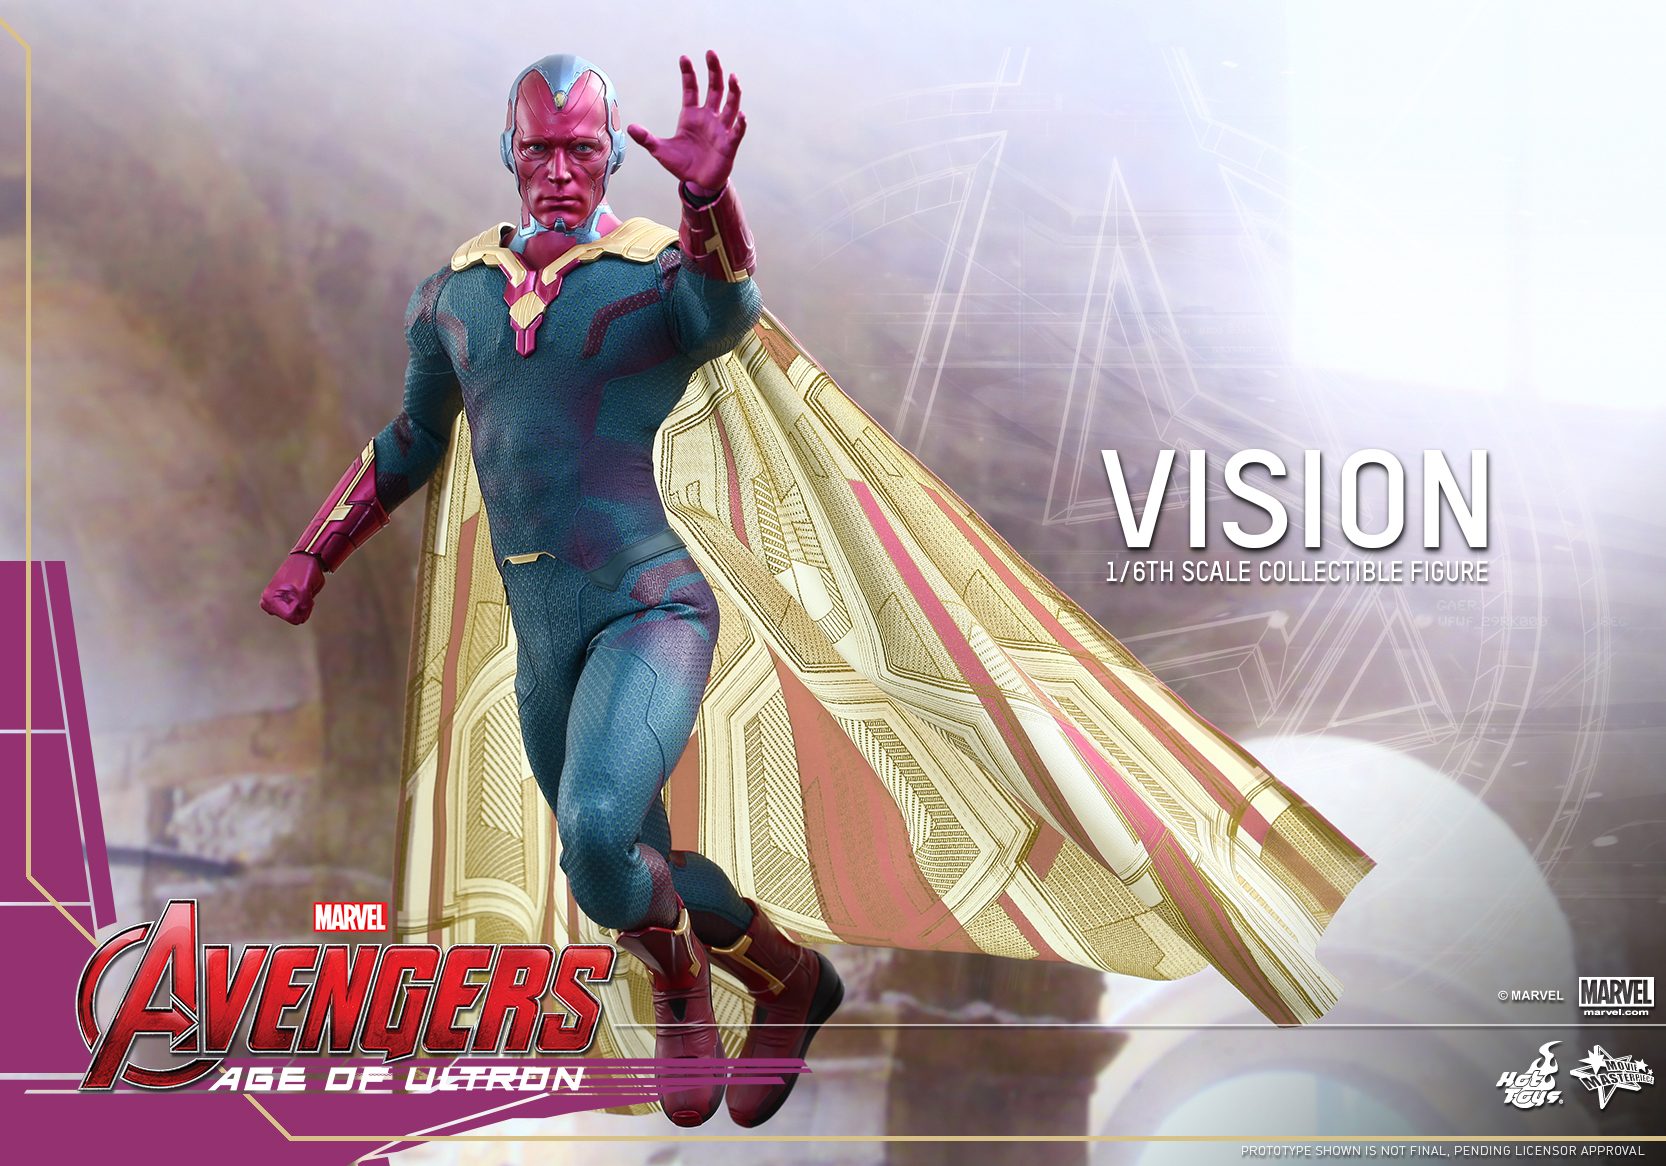 95+] Marvel Vision Wallpapers - WallpaperSafari